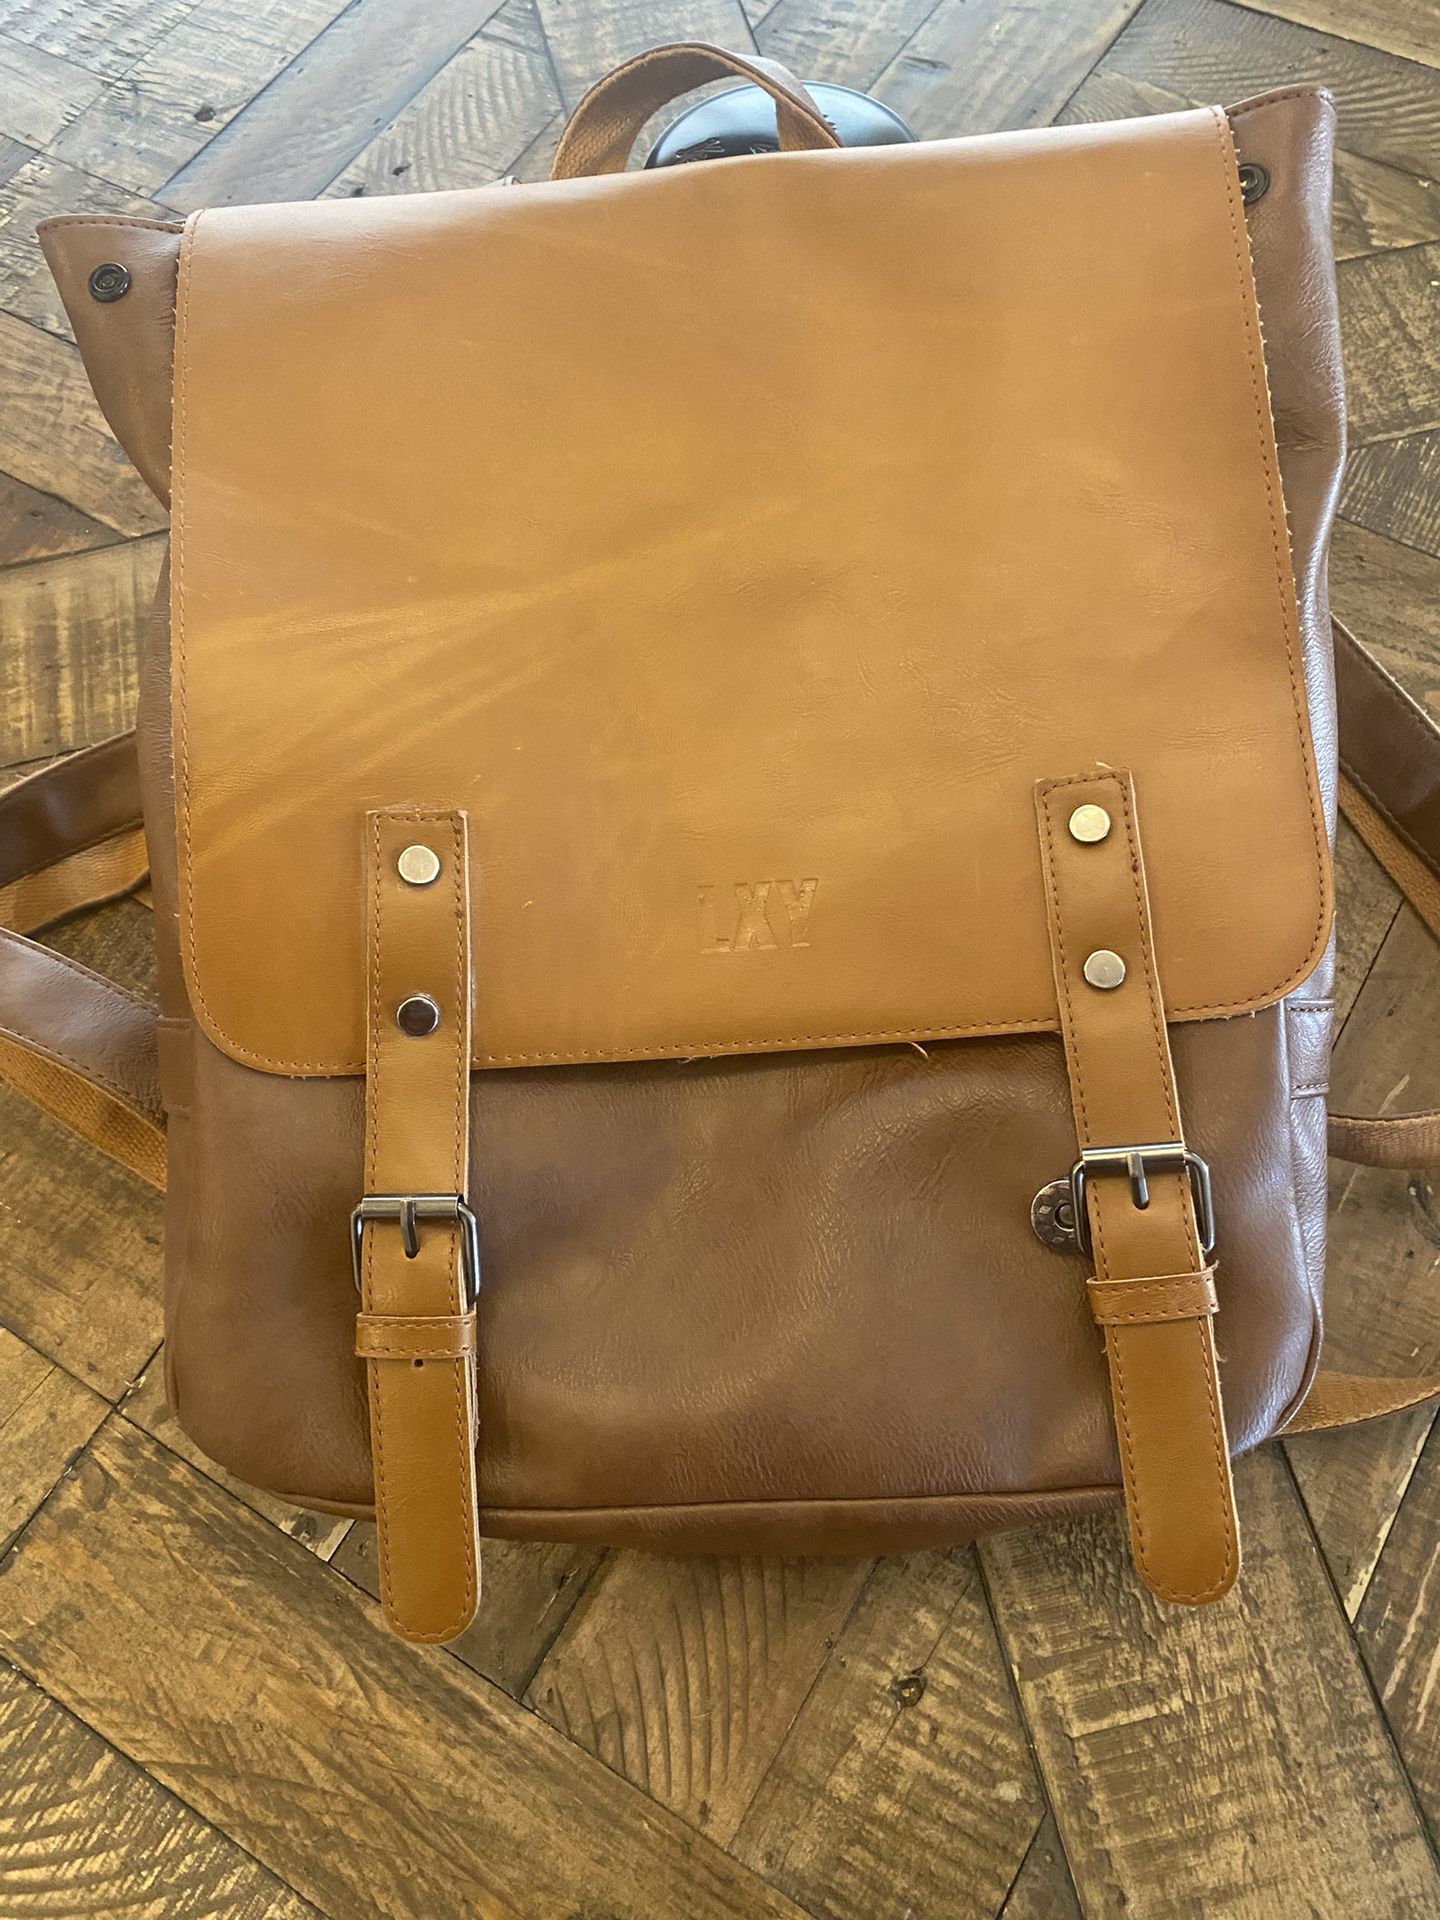  LXY  Vegan Leather Backpack/ Vintage Laptop/Bookbag For Women Or Men